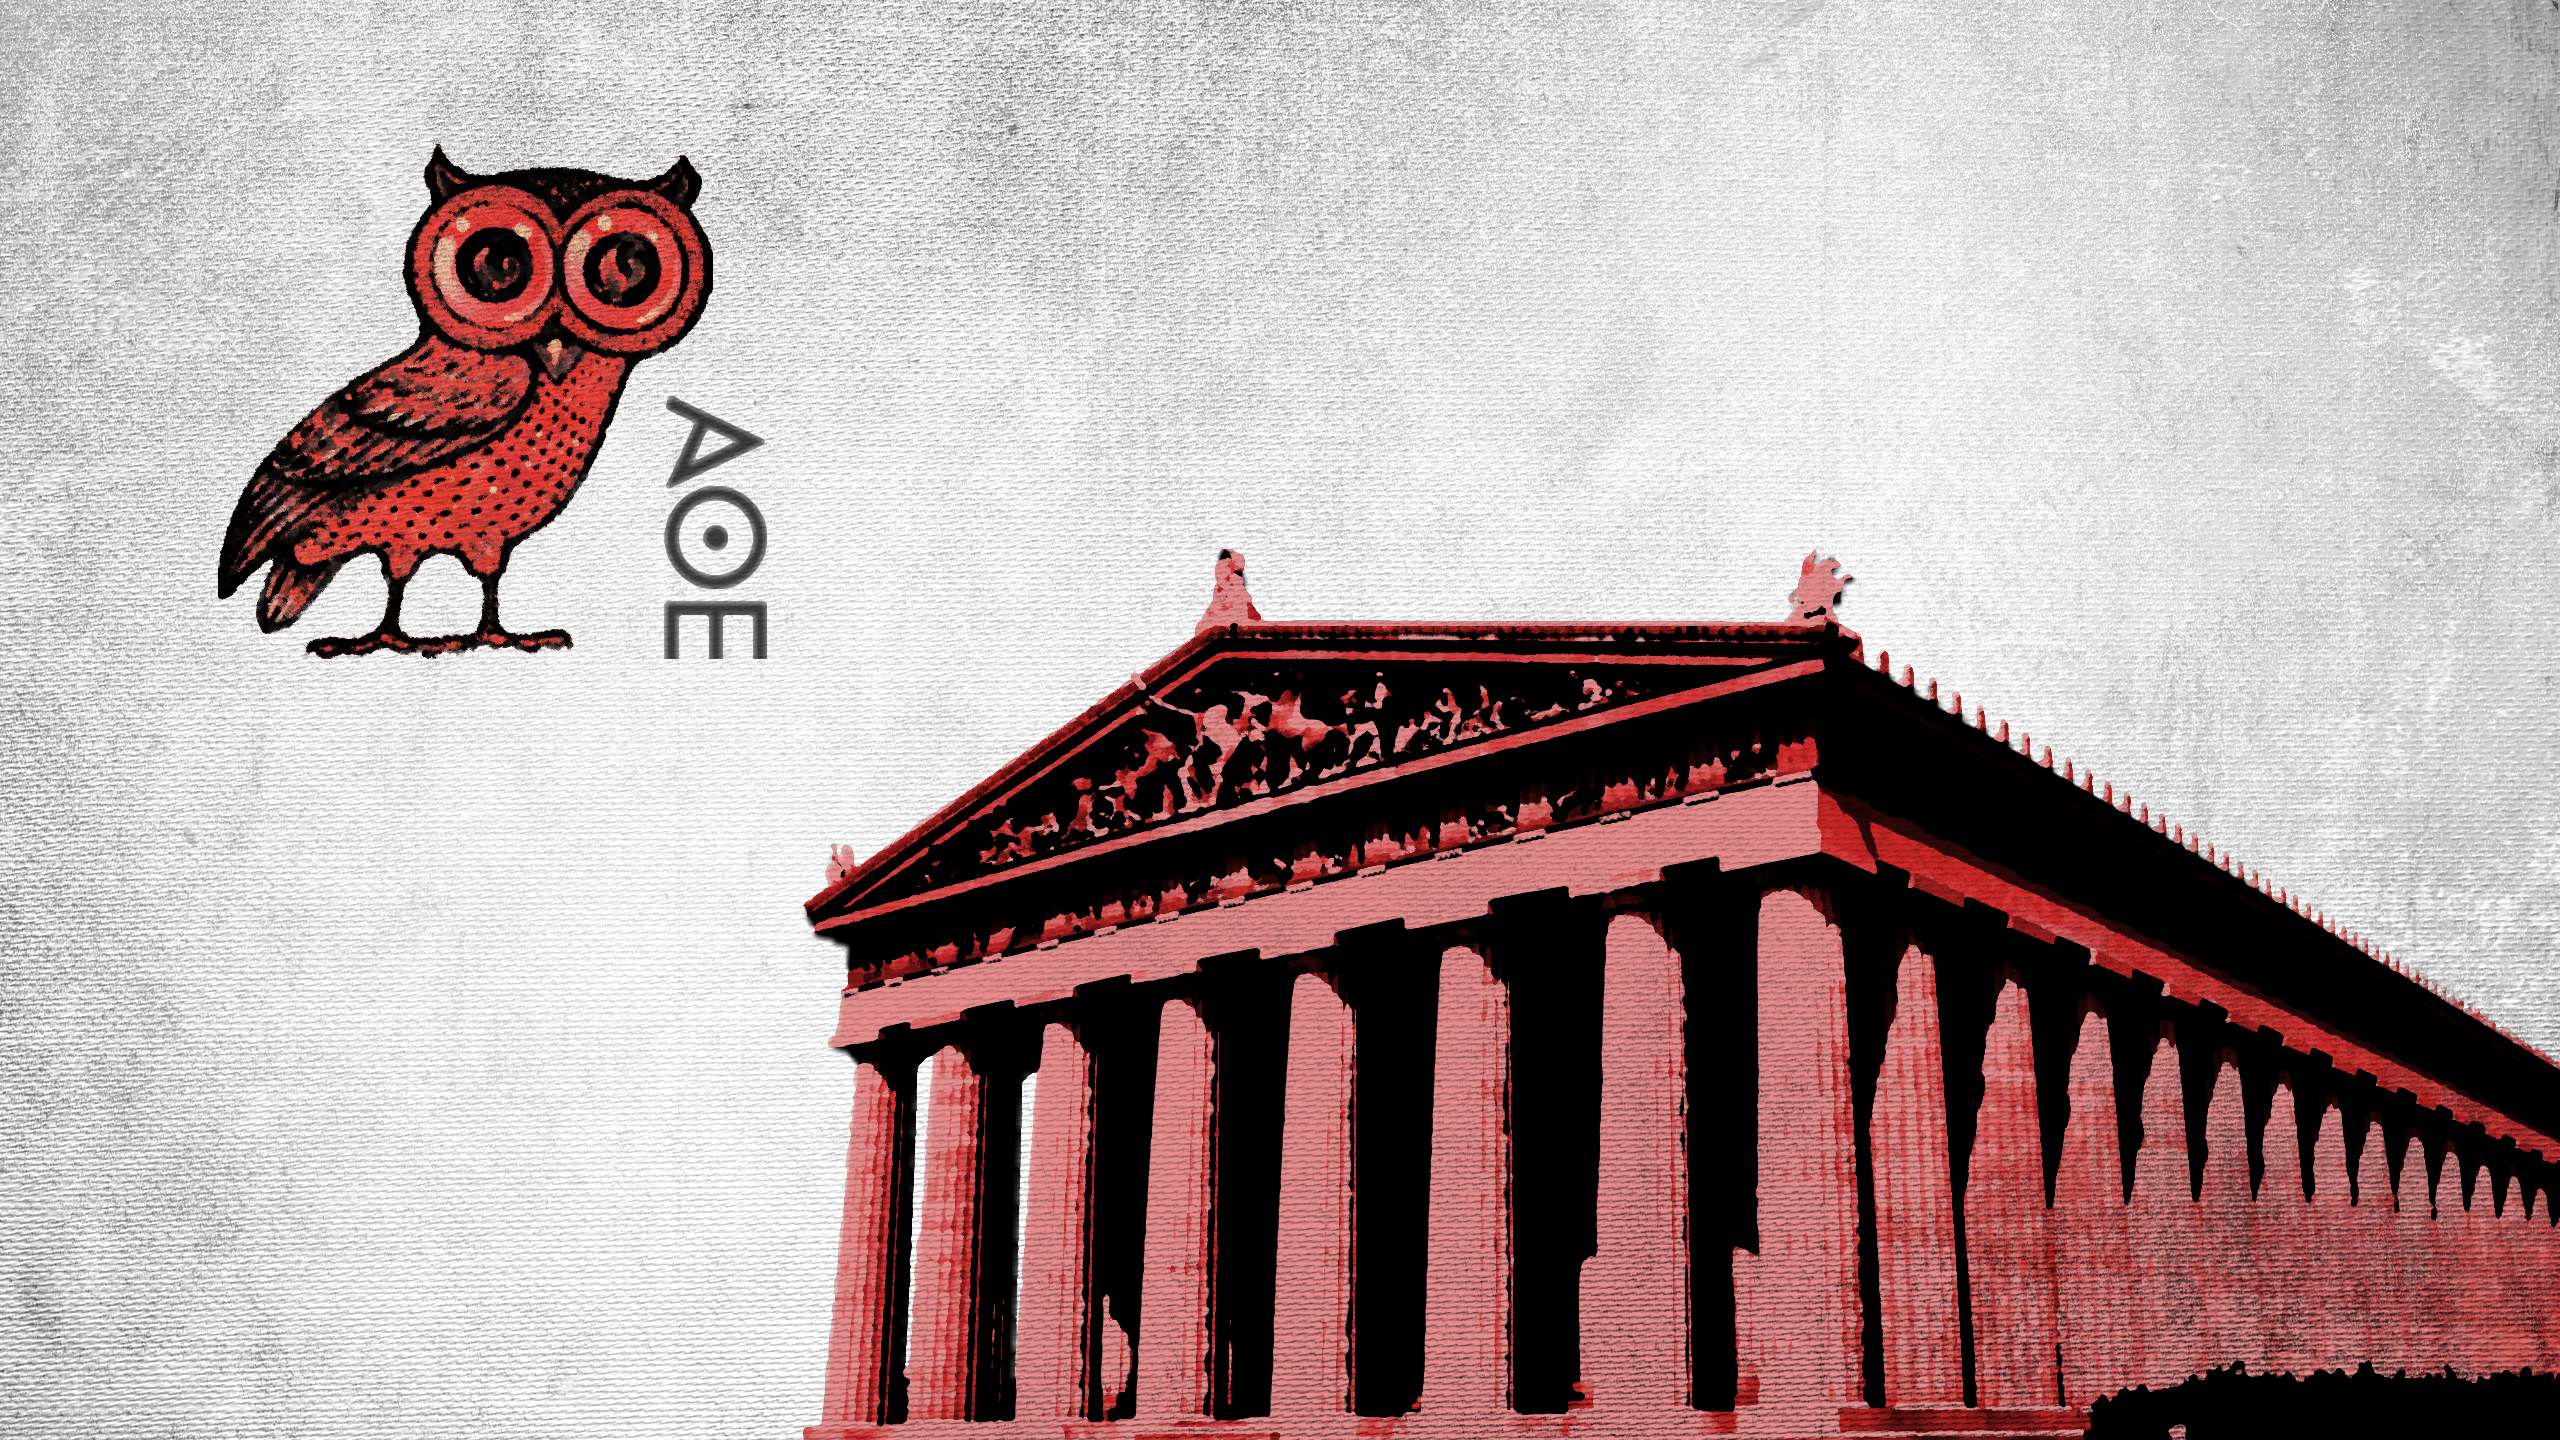 Athens Parthenon Owl Antiquity Greece Artwork 2560x1440